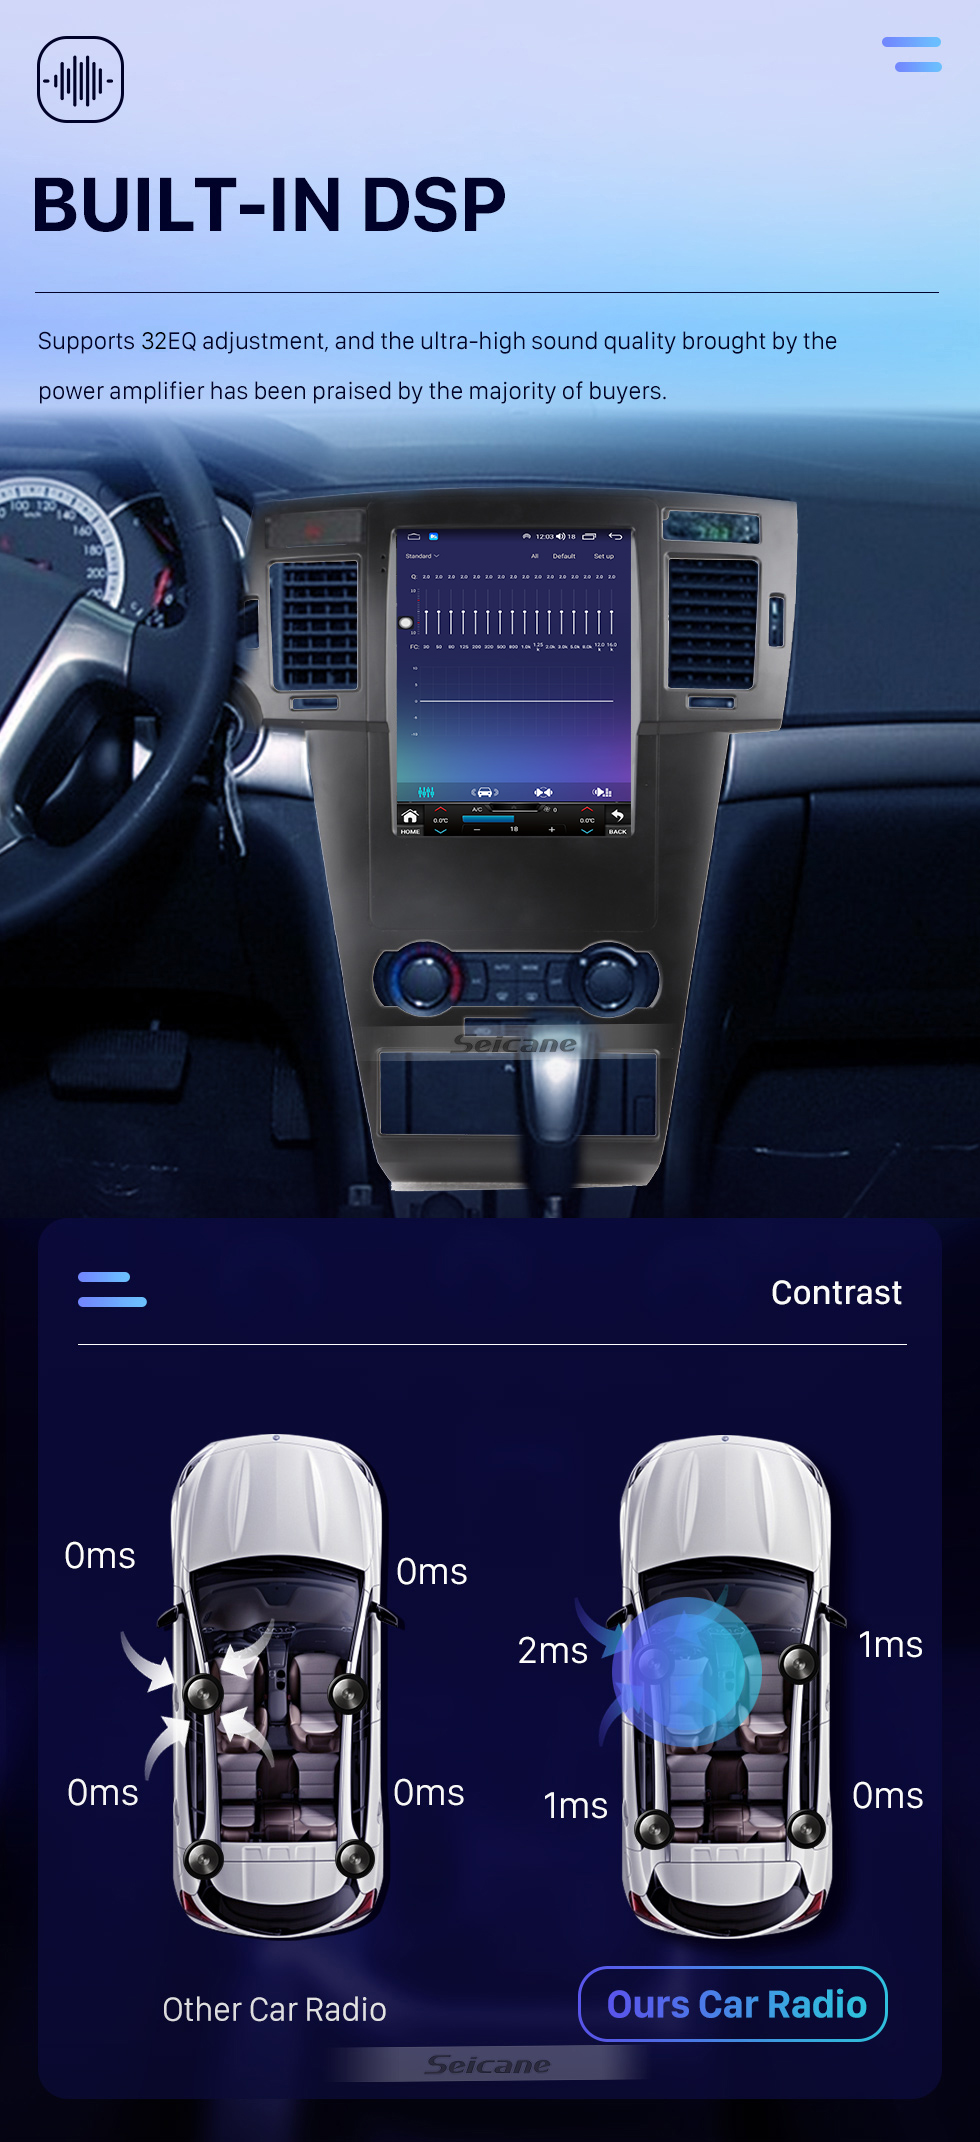 Seicane Tout en un Android 10.0 9,7 pouces 2008-2012 Chevrolet Epica Radio de navigation GPS avec écran tactile Carplay Bluetooth prend en charge la caméra AHD